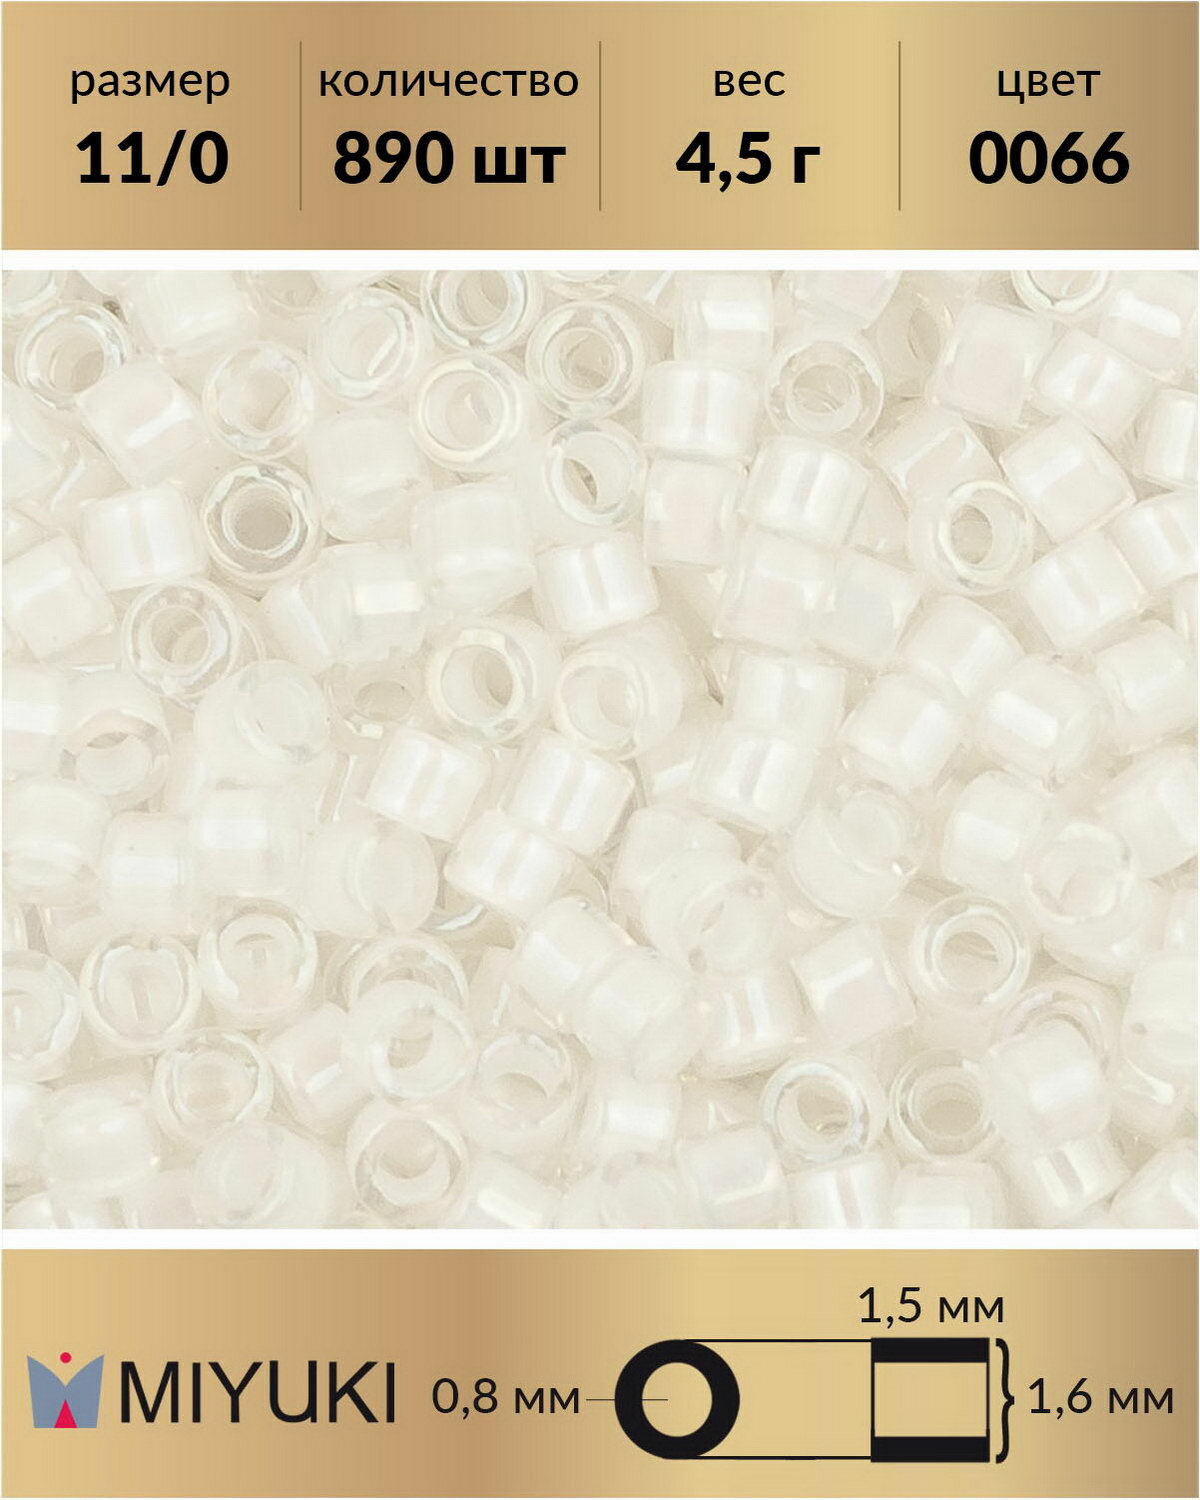 Бисер Miyuki Delica цилиндрический размер 11/0 цвет: Окрашенный изнутри радужный белый (0066) 45 грамма